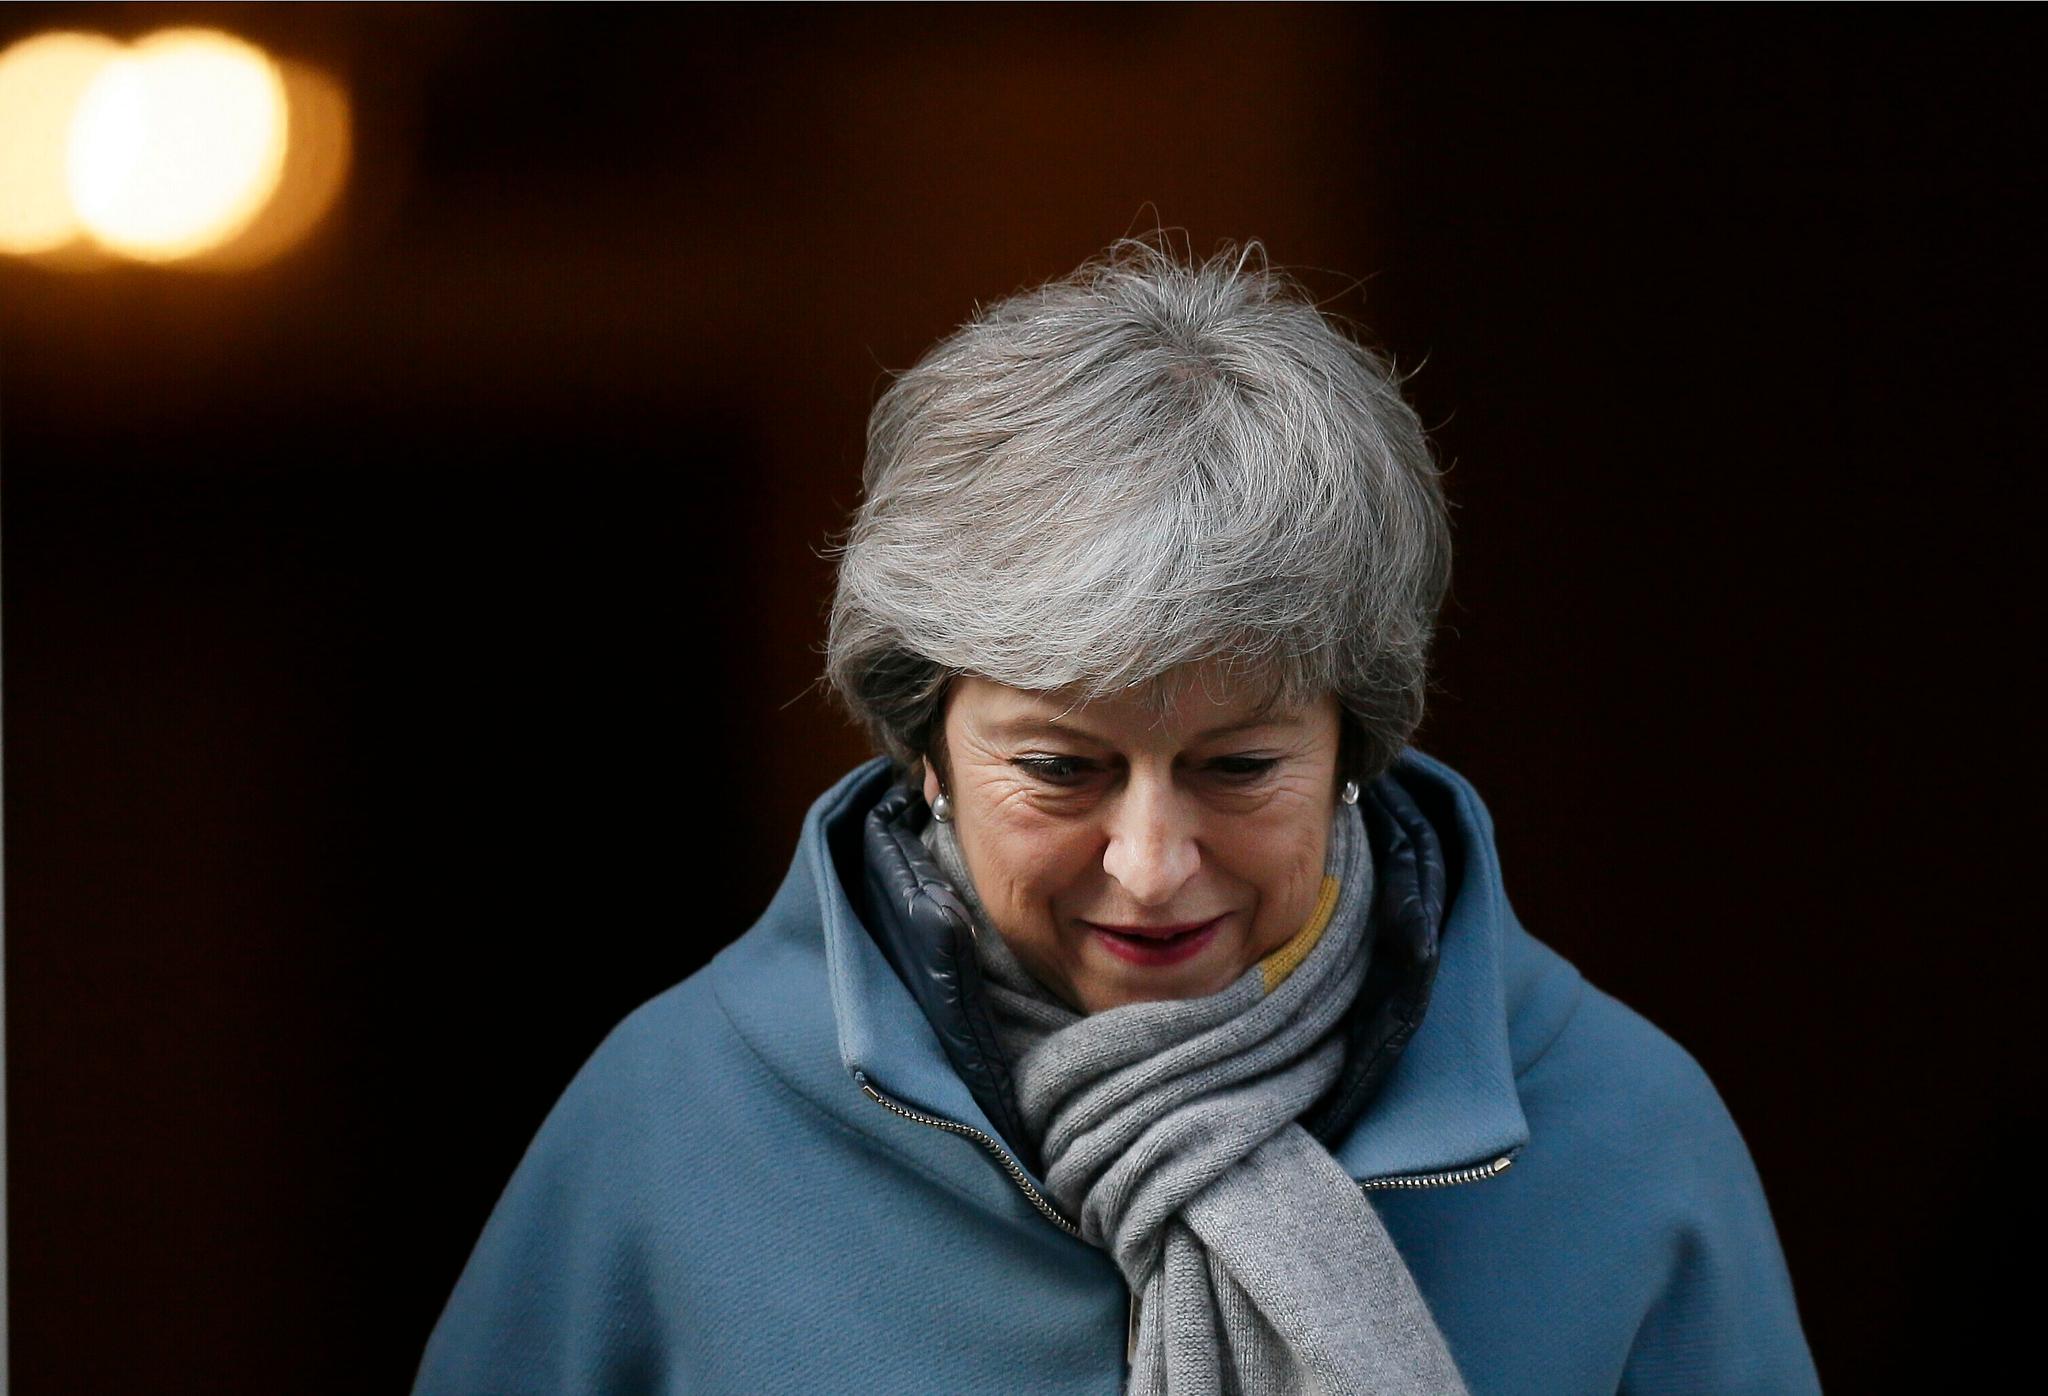 Storbritannias statsminister Theresa May har brukt opp sin sjanse til å få flertall for brexitavtalen hun har forhandlet fram med EU, sier Underhusets speaker John Bercow. Foto: Tim Ireland / AP / NTB scanpix